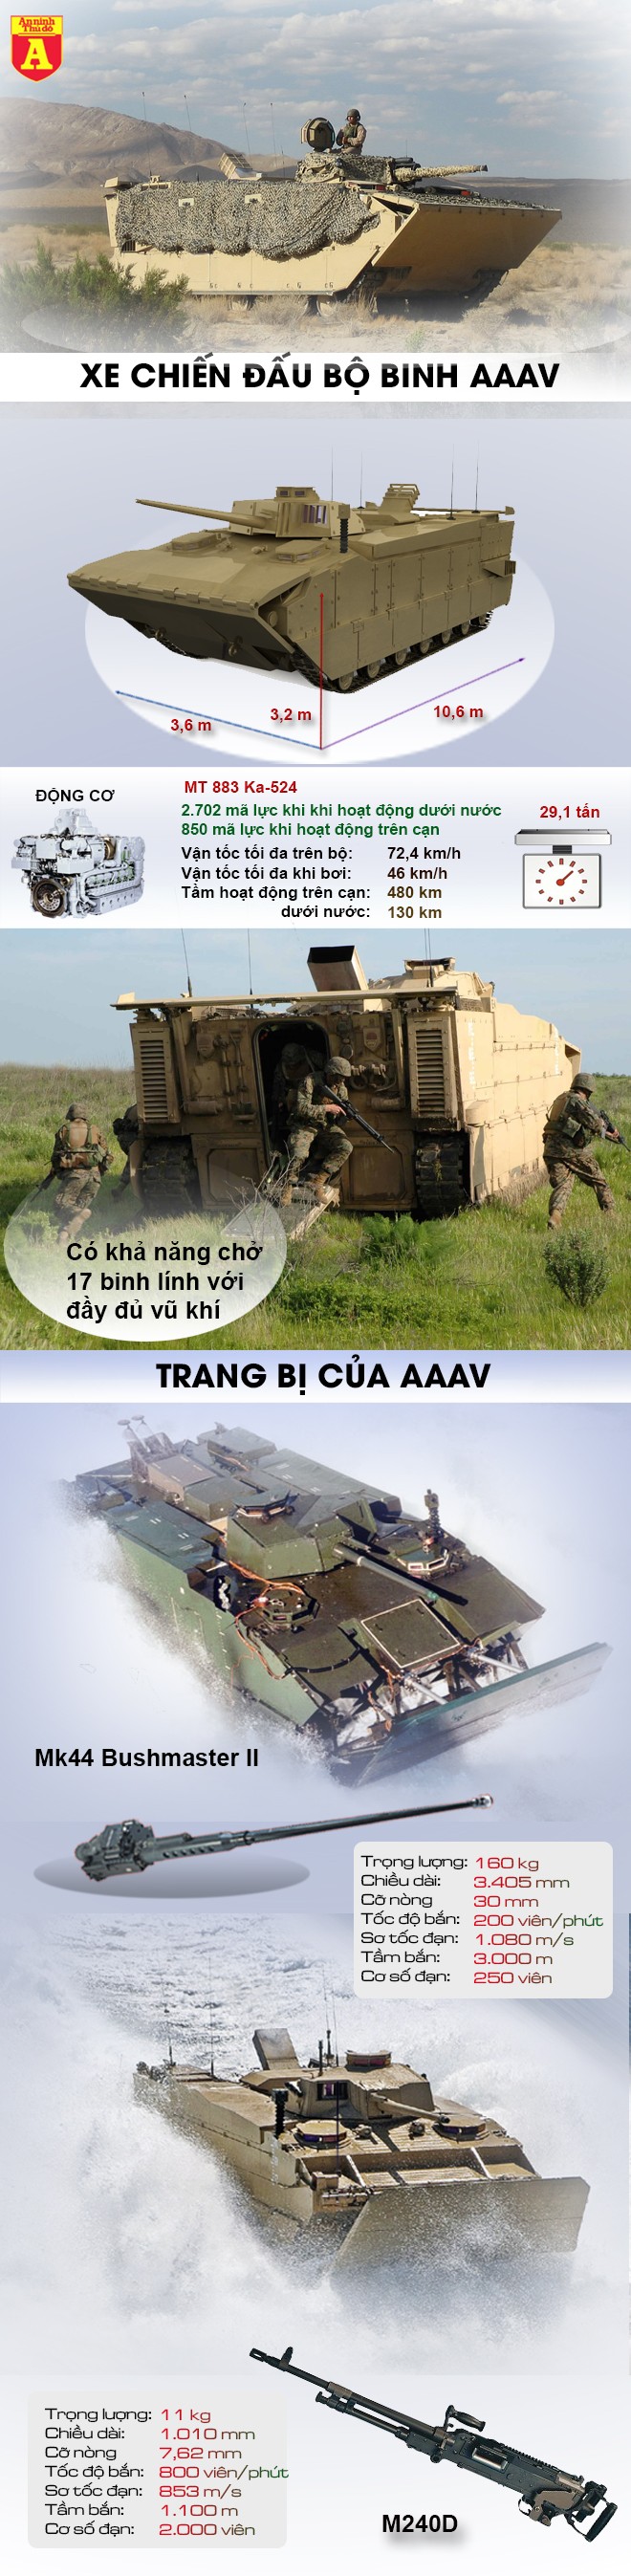 [Infographic] "Quái vật đổ bộ" AAAV của Mỹ "đè bẹp" niềm tự hào VN-18 của Trung Quốc mới khai sinh ảnh 2